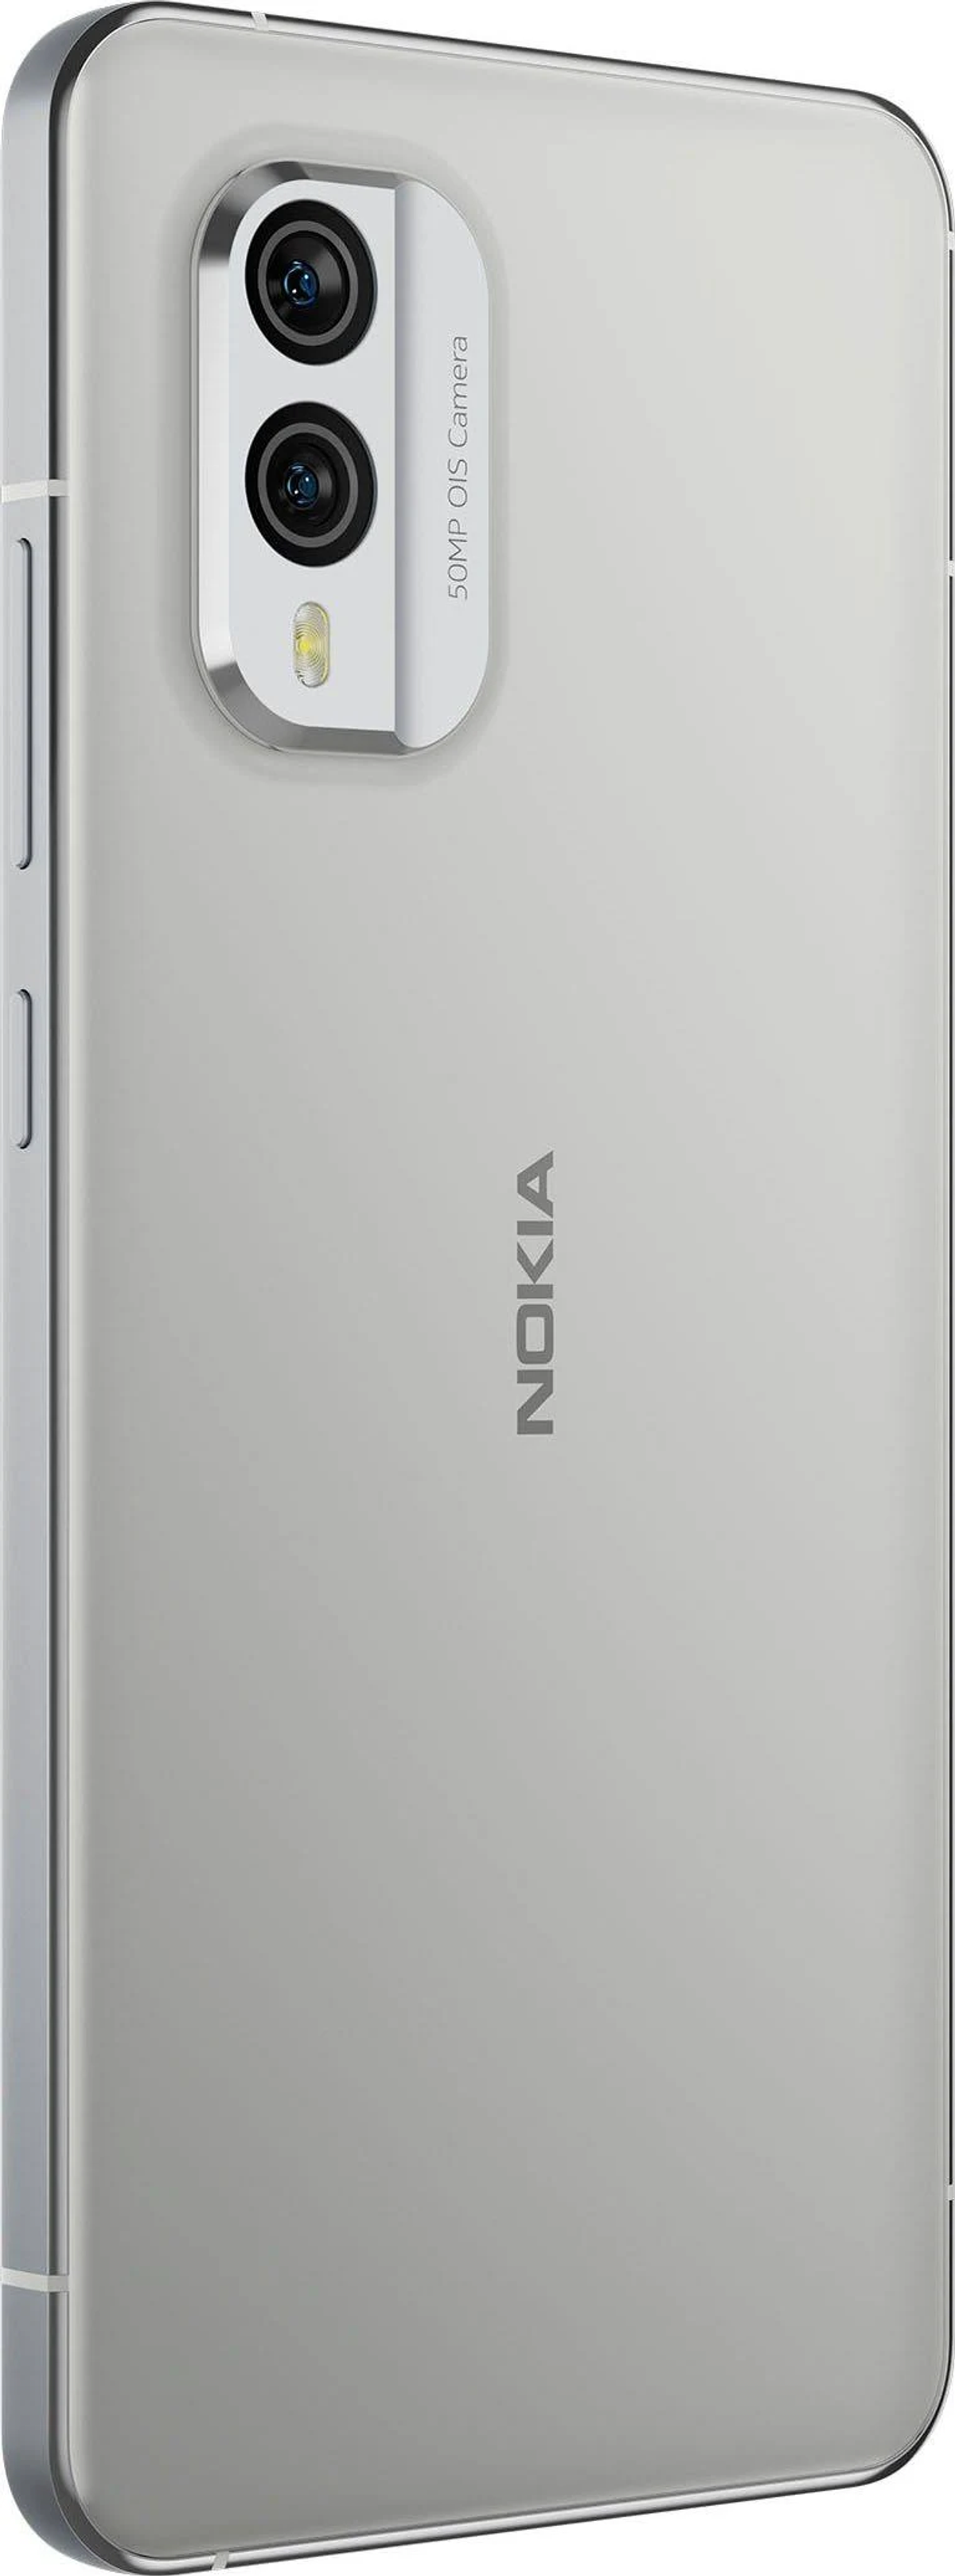 NOKIA VMA751W9FI1SK0 256 Weiß Dual SIM GB